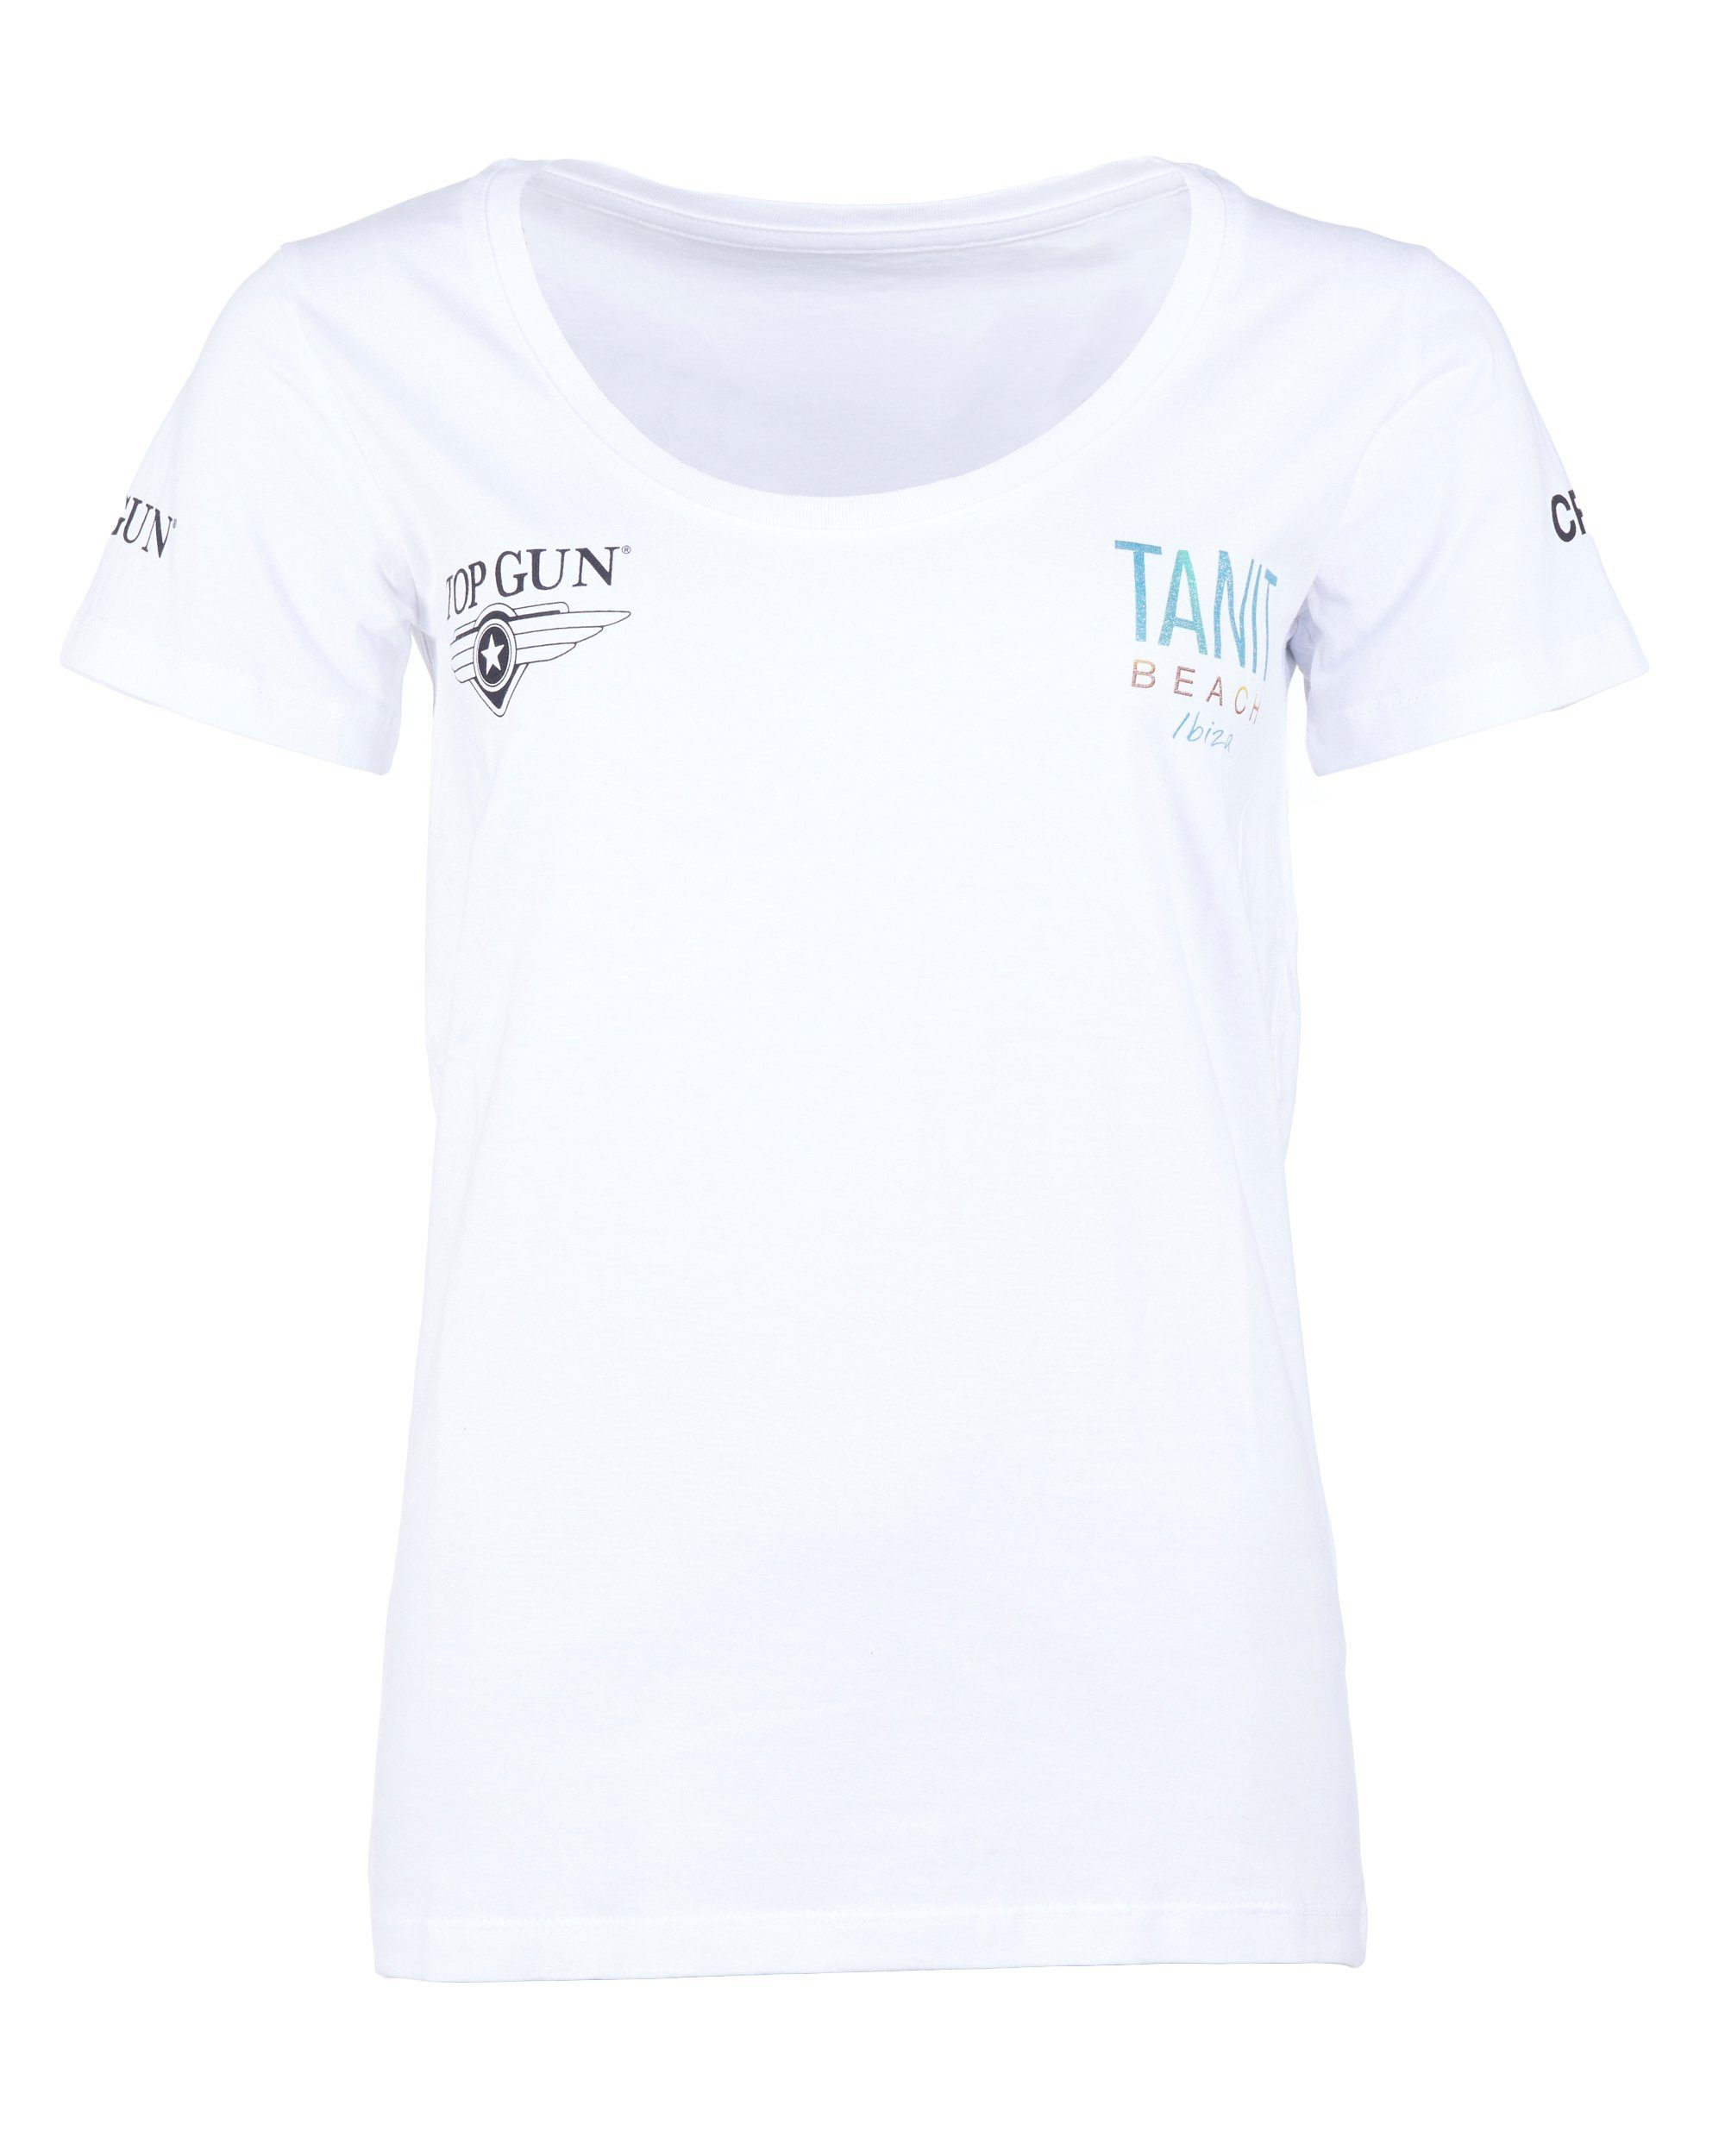 TOP GUN T-Shirt NB20123